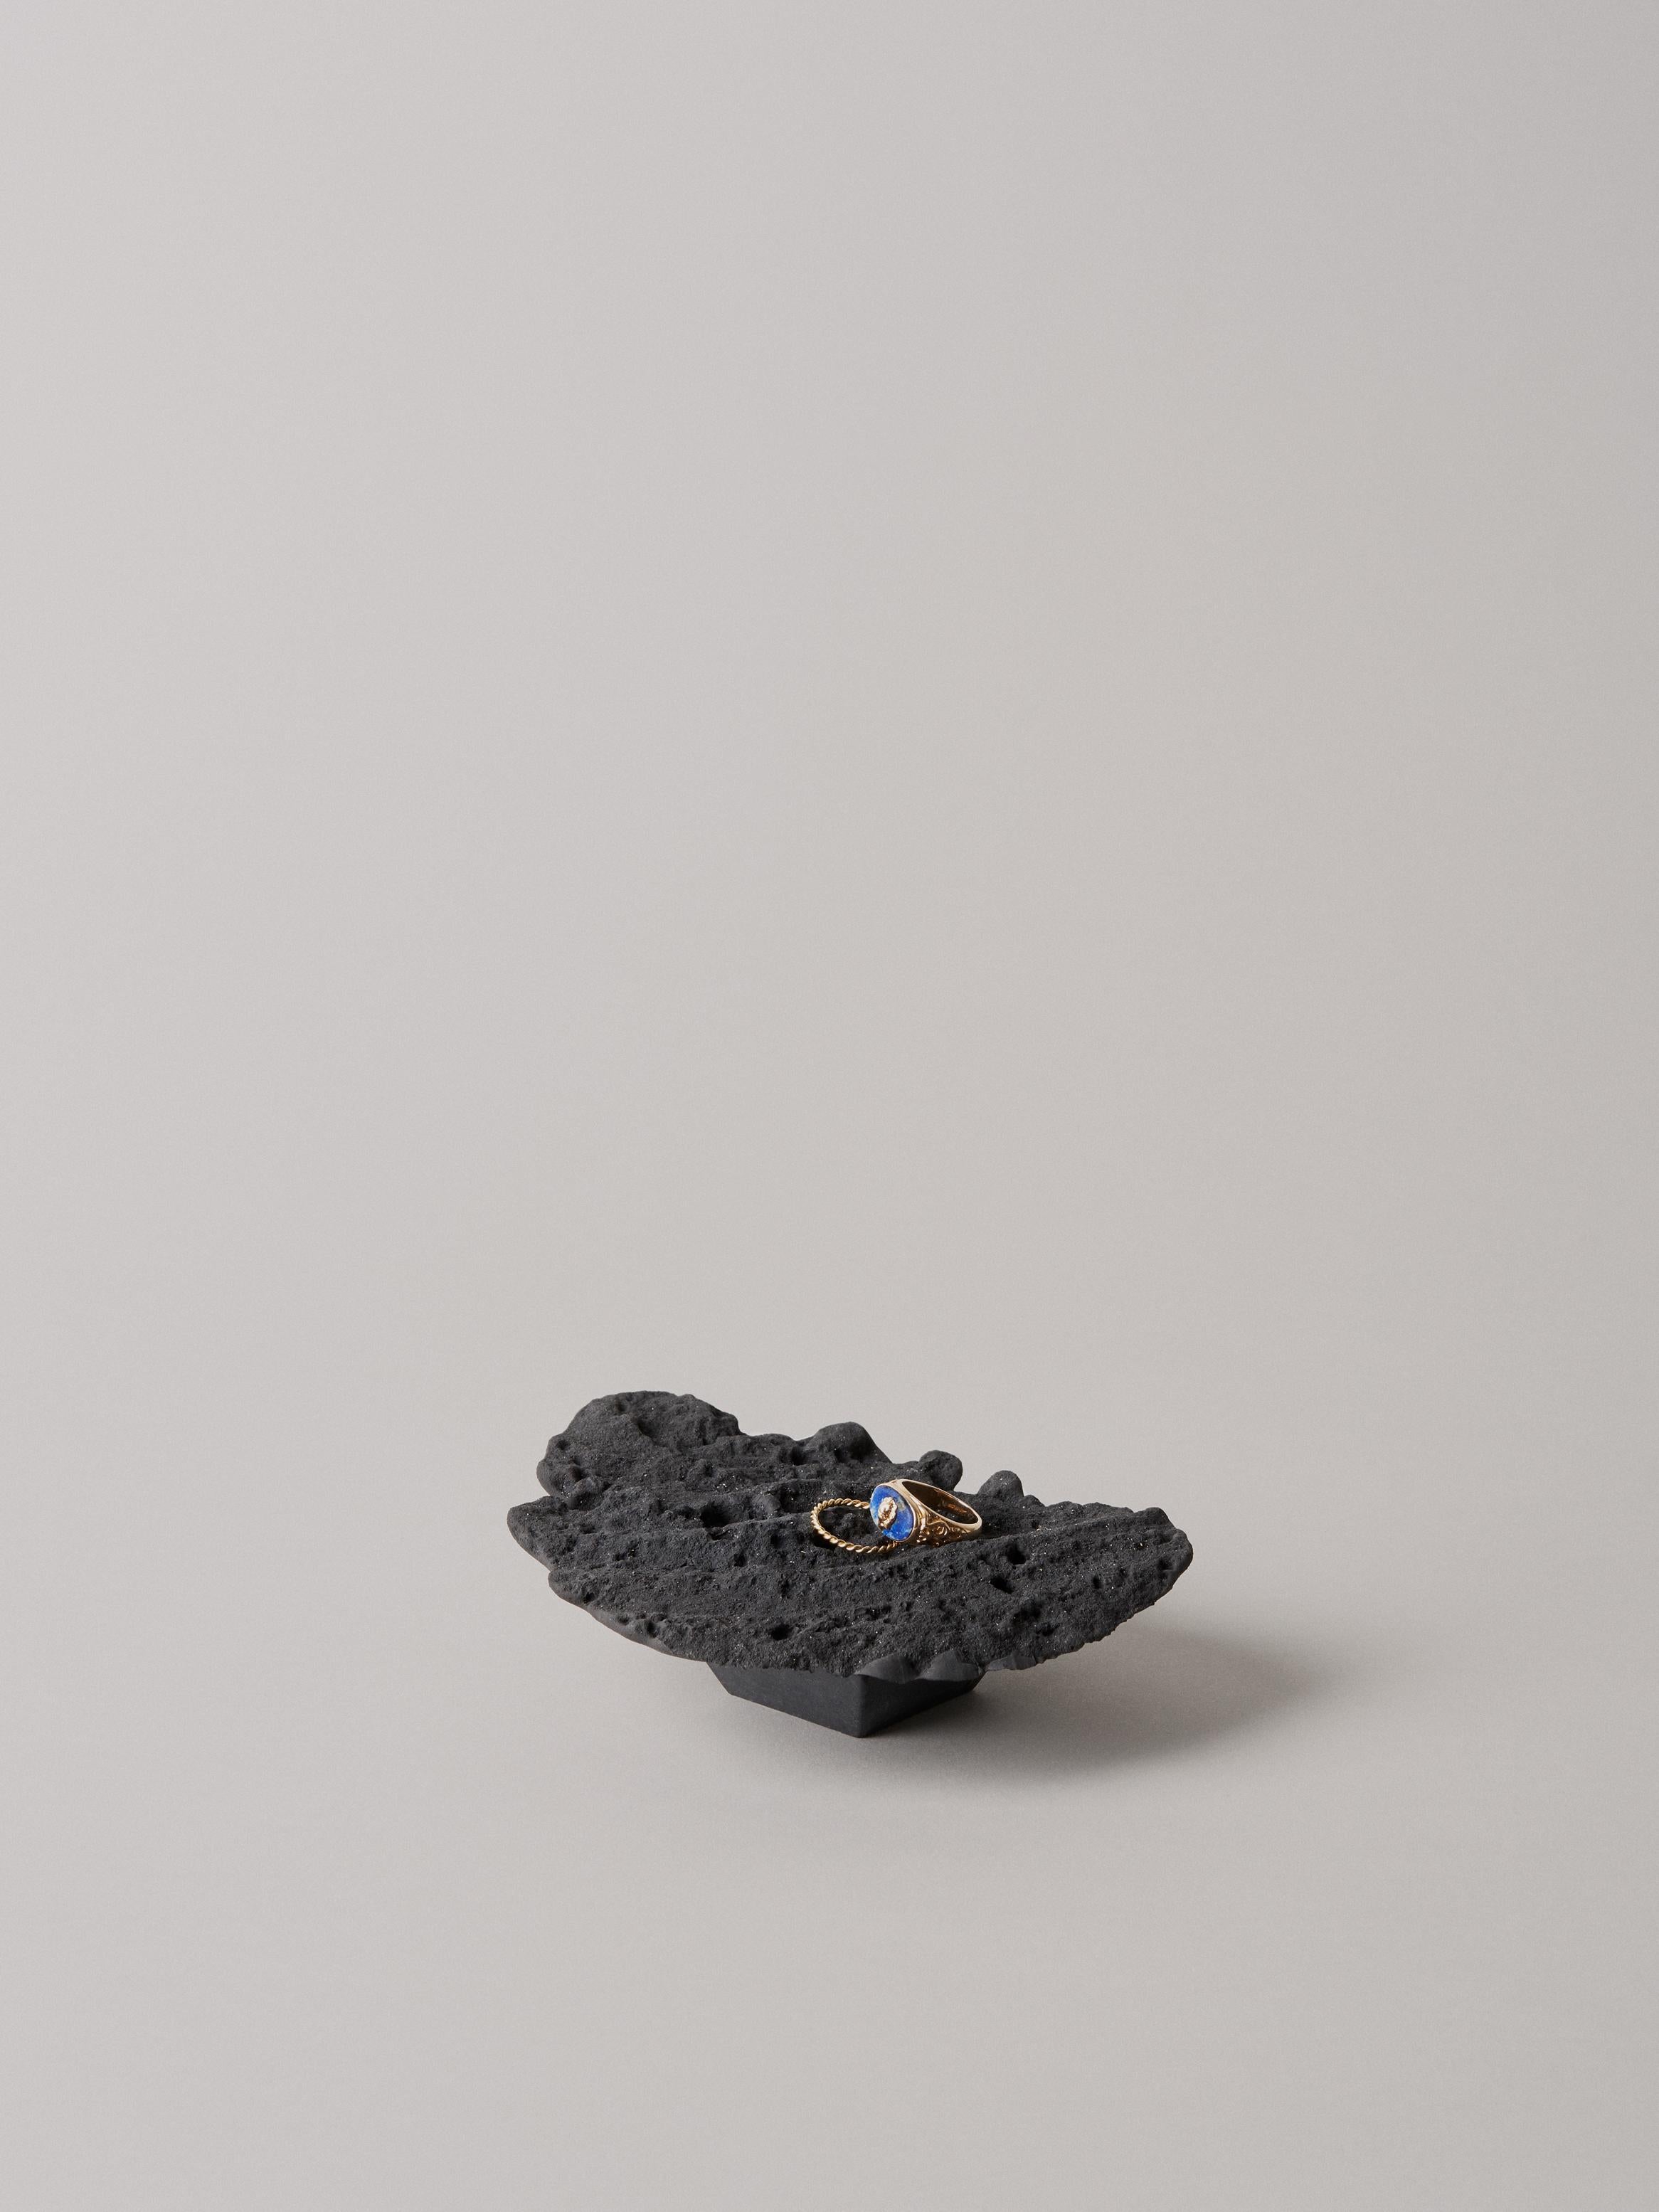 Assiette de service Lava bed de Kajsa Melchior
Collection Collectional Erosion
Dimensions : H : Environ 4 cm
 Ø : Environ 40 cm
MATERIAL : Sculptée dans le sable par Pressaure à partir d'air et d'eau
 Développé en acrylique, coloré par le